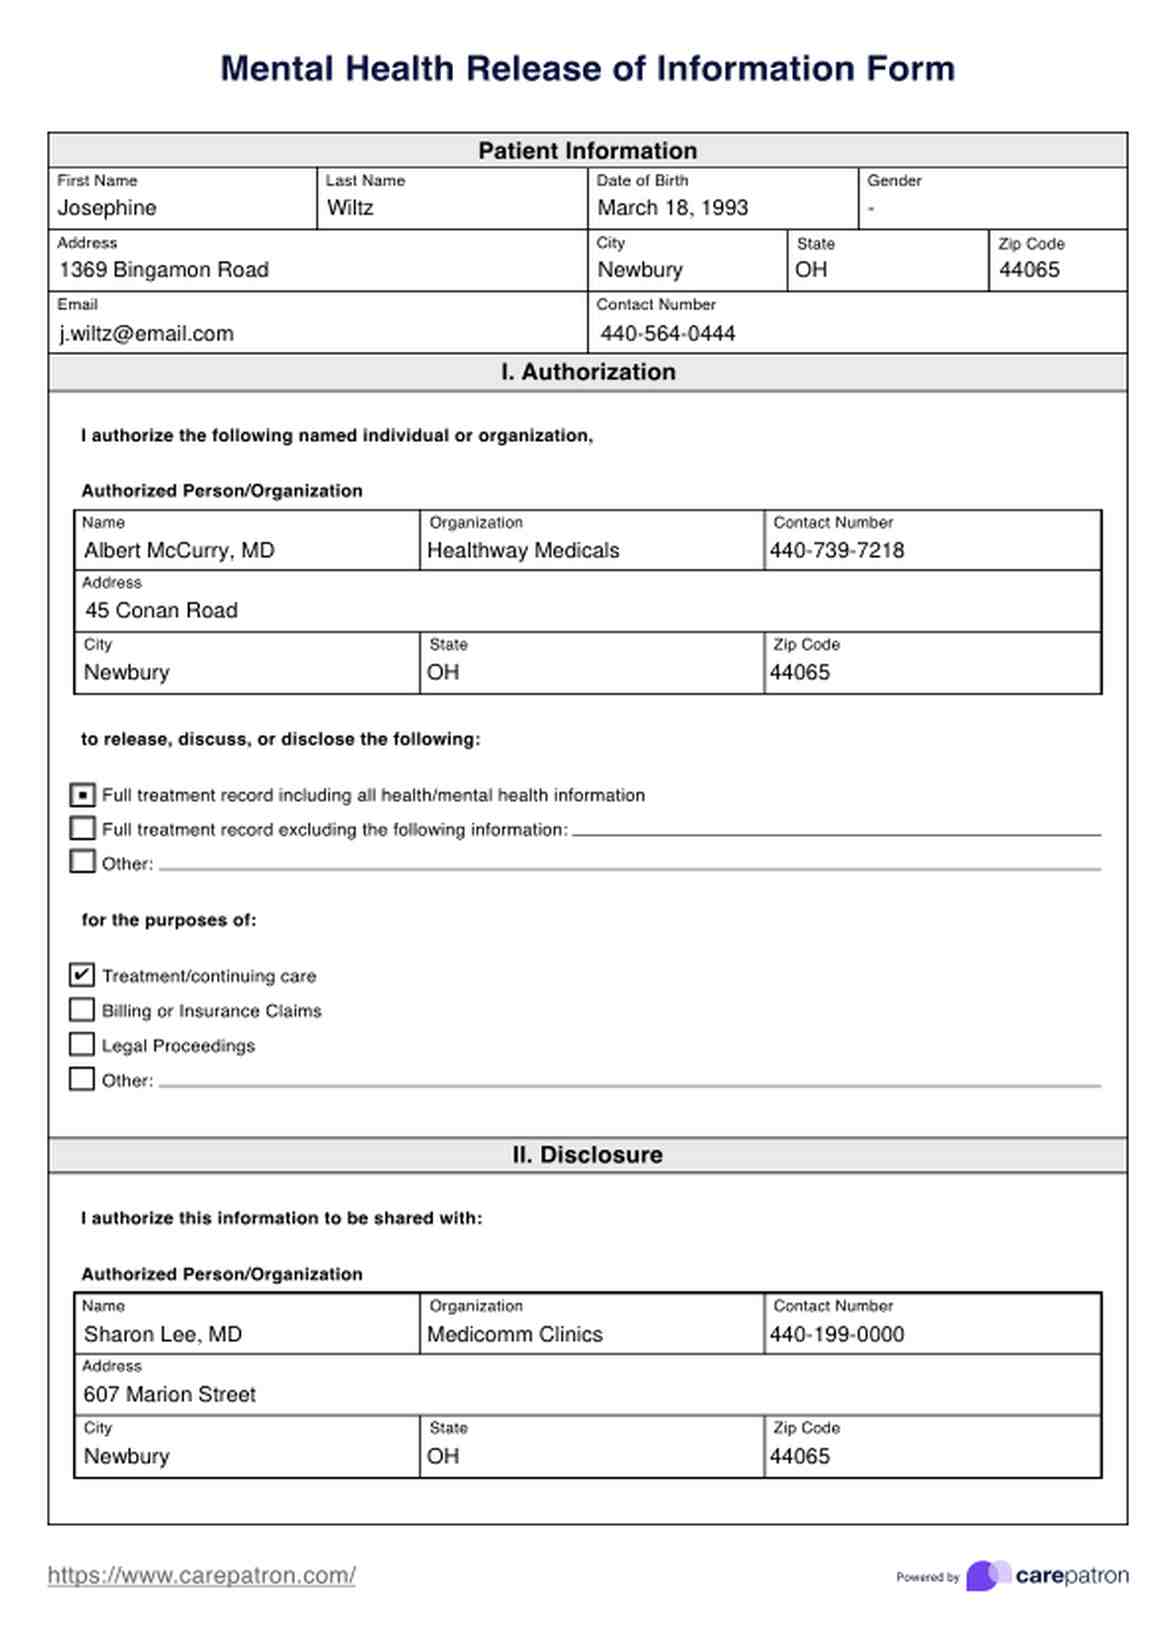 Formulario de Autorización para divulgar información sobre salud mental PDF Example